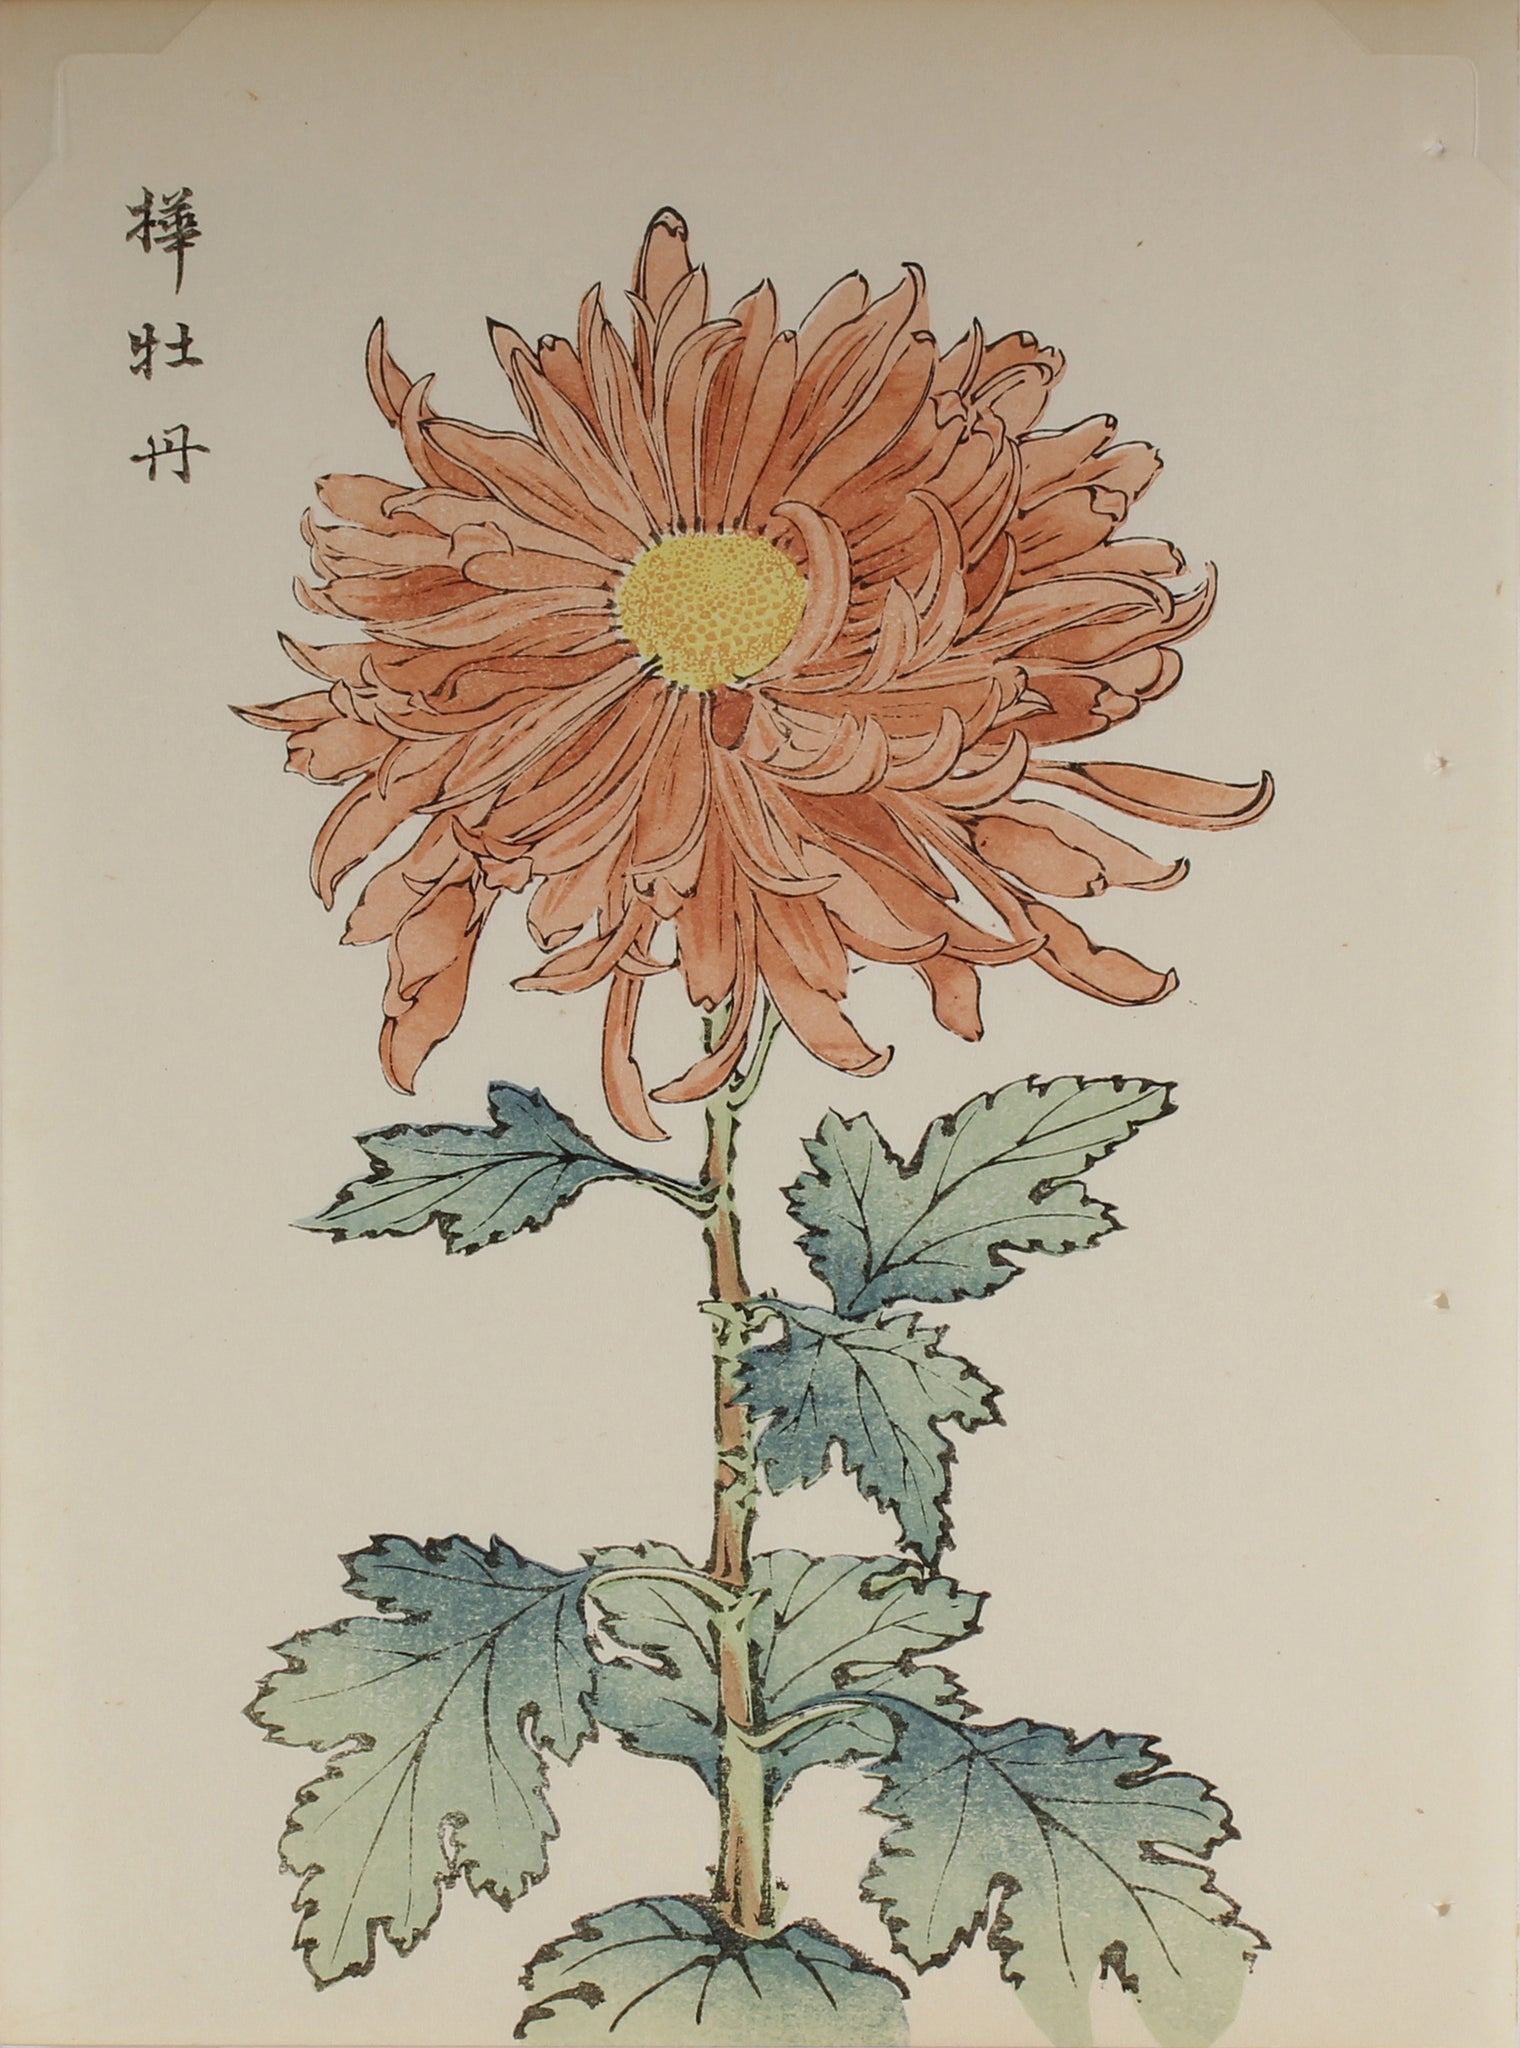 100 chrysanthemums by Keika - p33